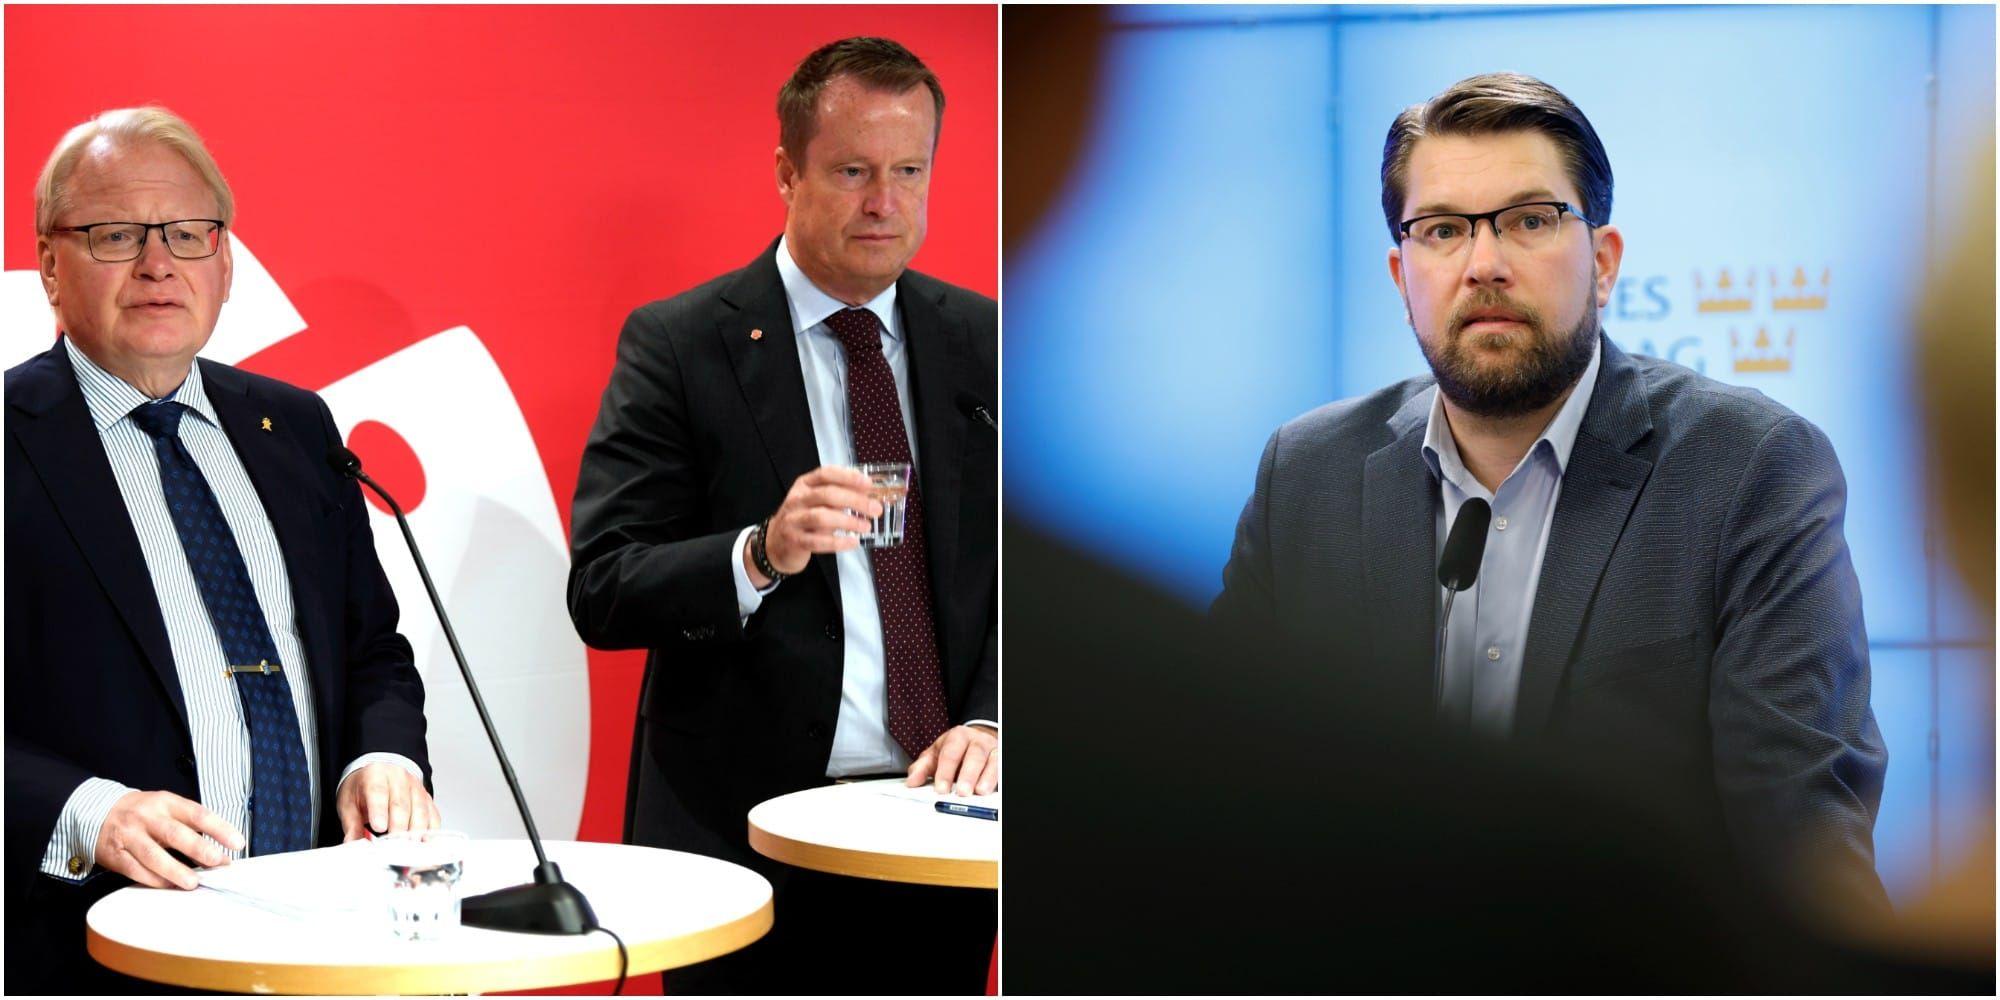 S-ministrarna Peter Hultqvist och Anders Ygeman anklagade SD för att vara en säkerhetsrisk. ”Diktaturfasoner”, svarade Jimmie Åkesson. 